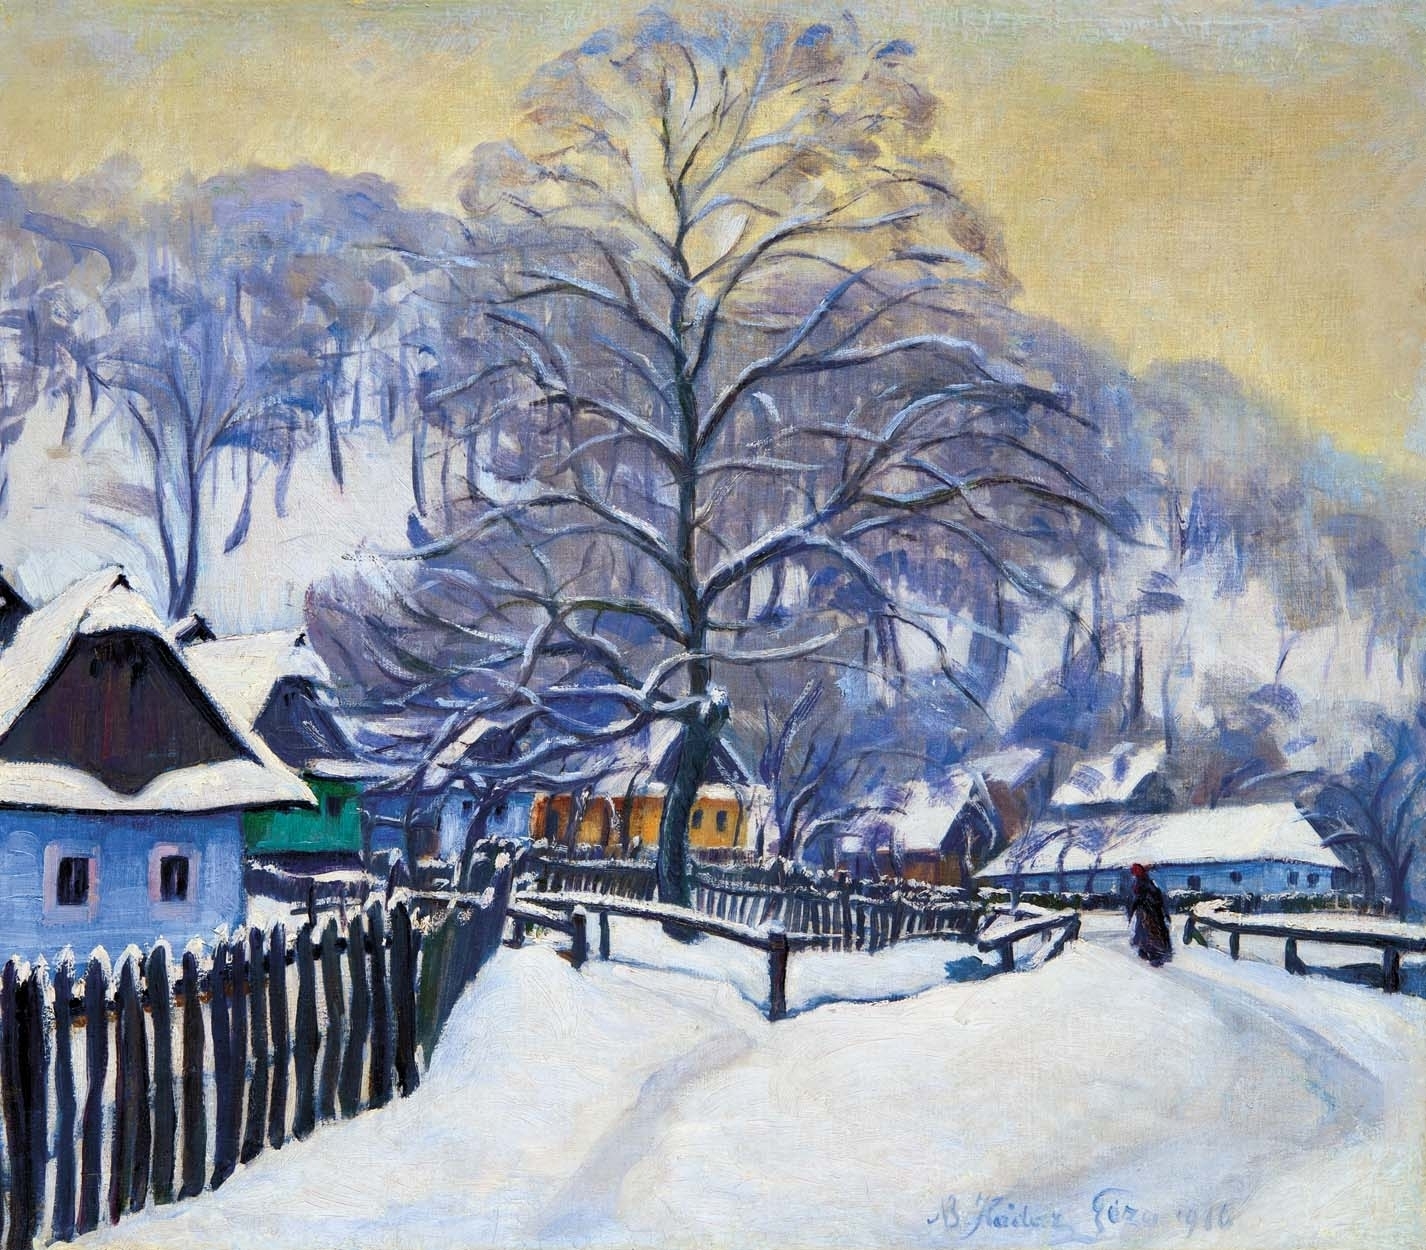 Kádár Géza (1878-1952) Nagybánya (Baia Mare) at Winter, 1916